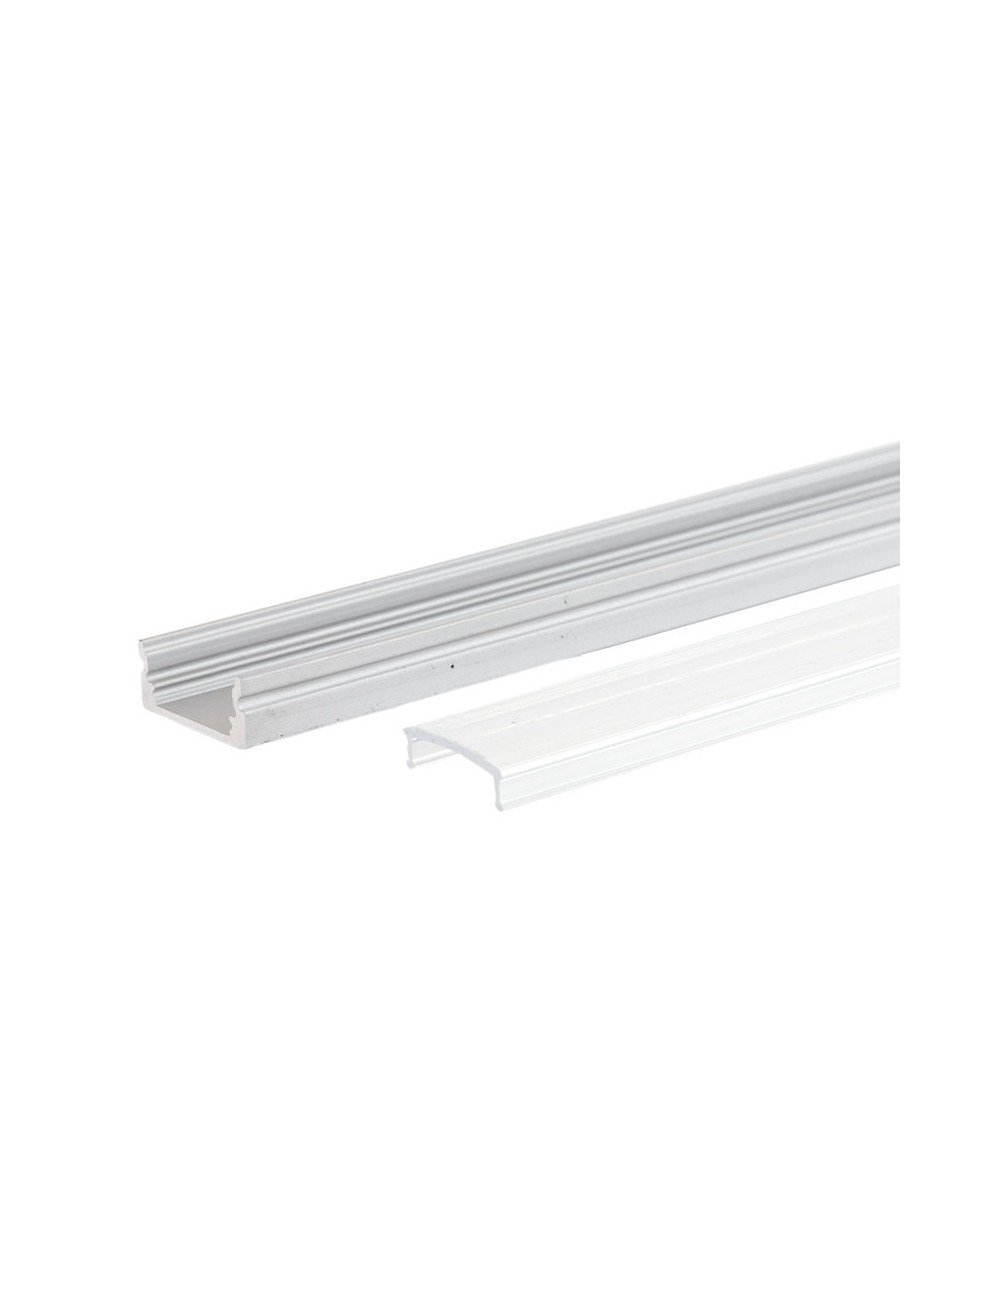 Profil Aluminium Pour Bande LED Diffuseur Transparent LLE-A1707-T x 2M